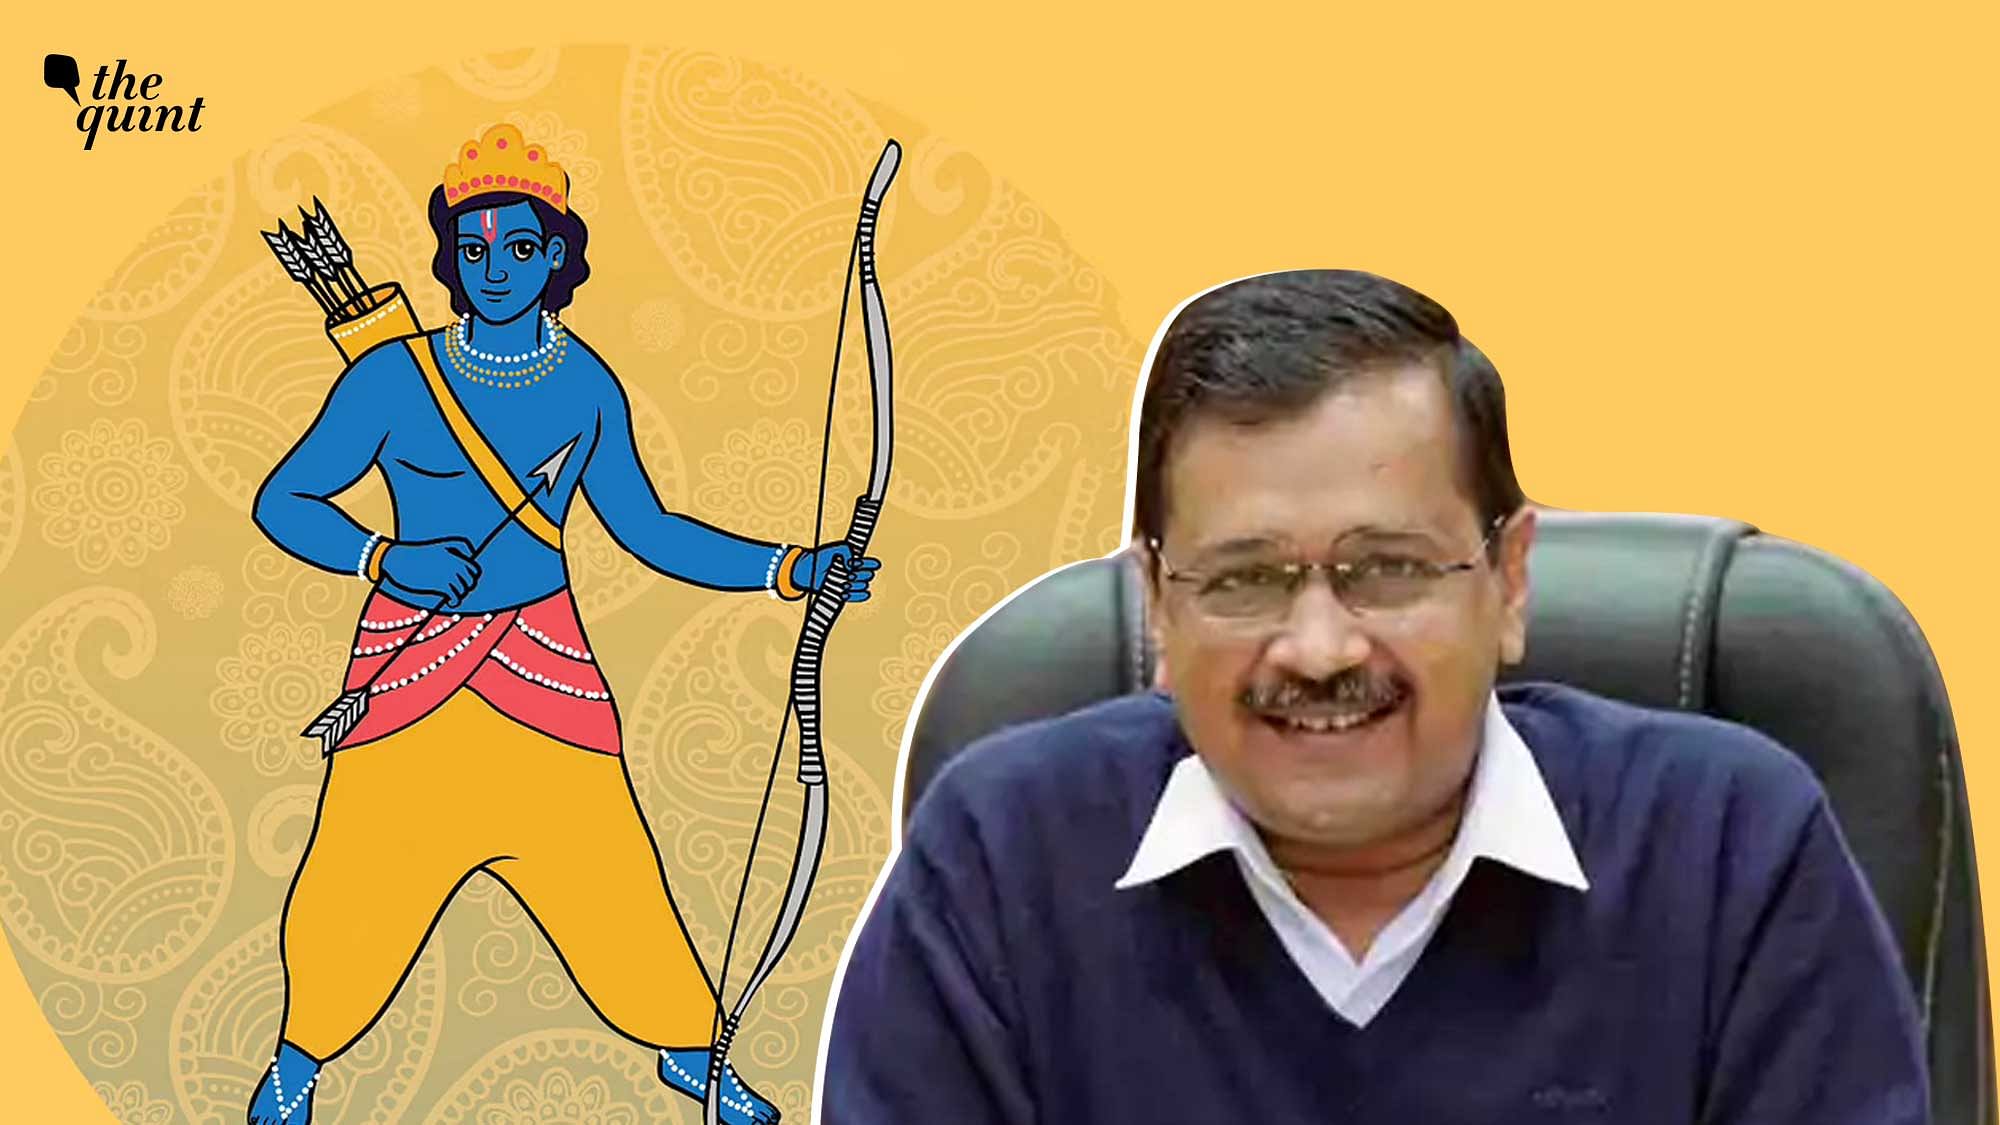 Image of Delhi CM Arvind Kejriwal used for representational purposes.